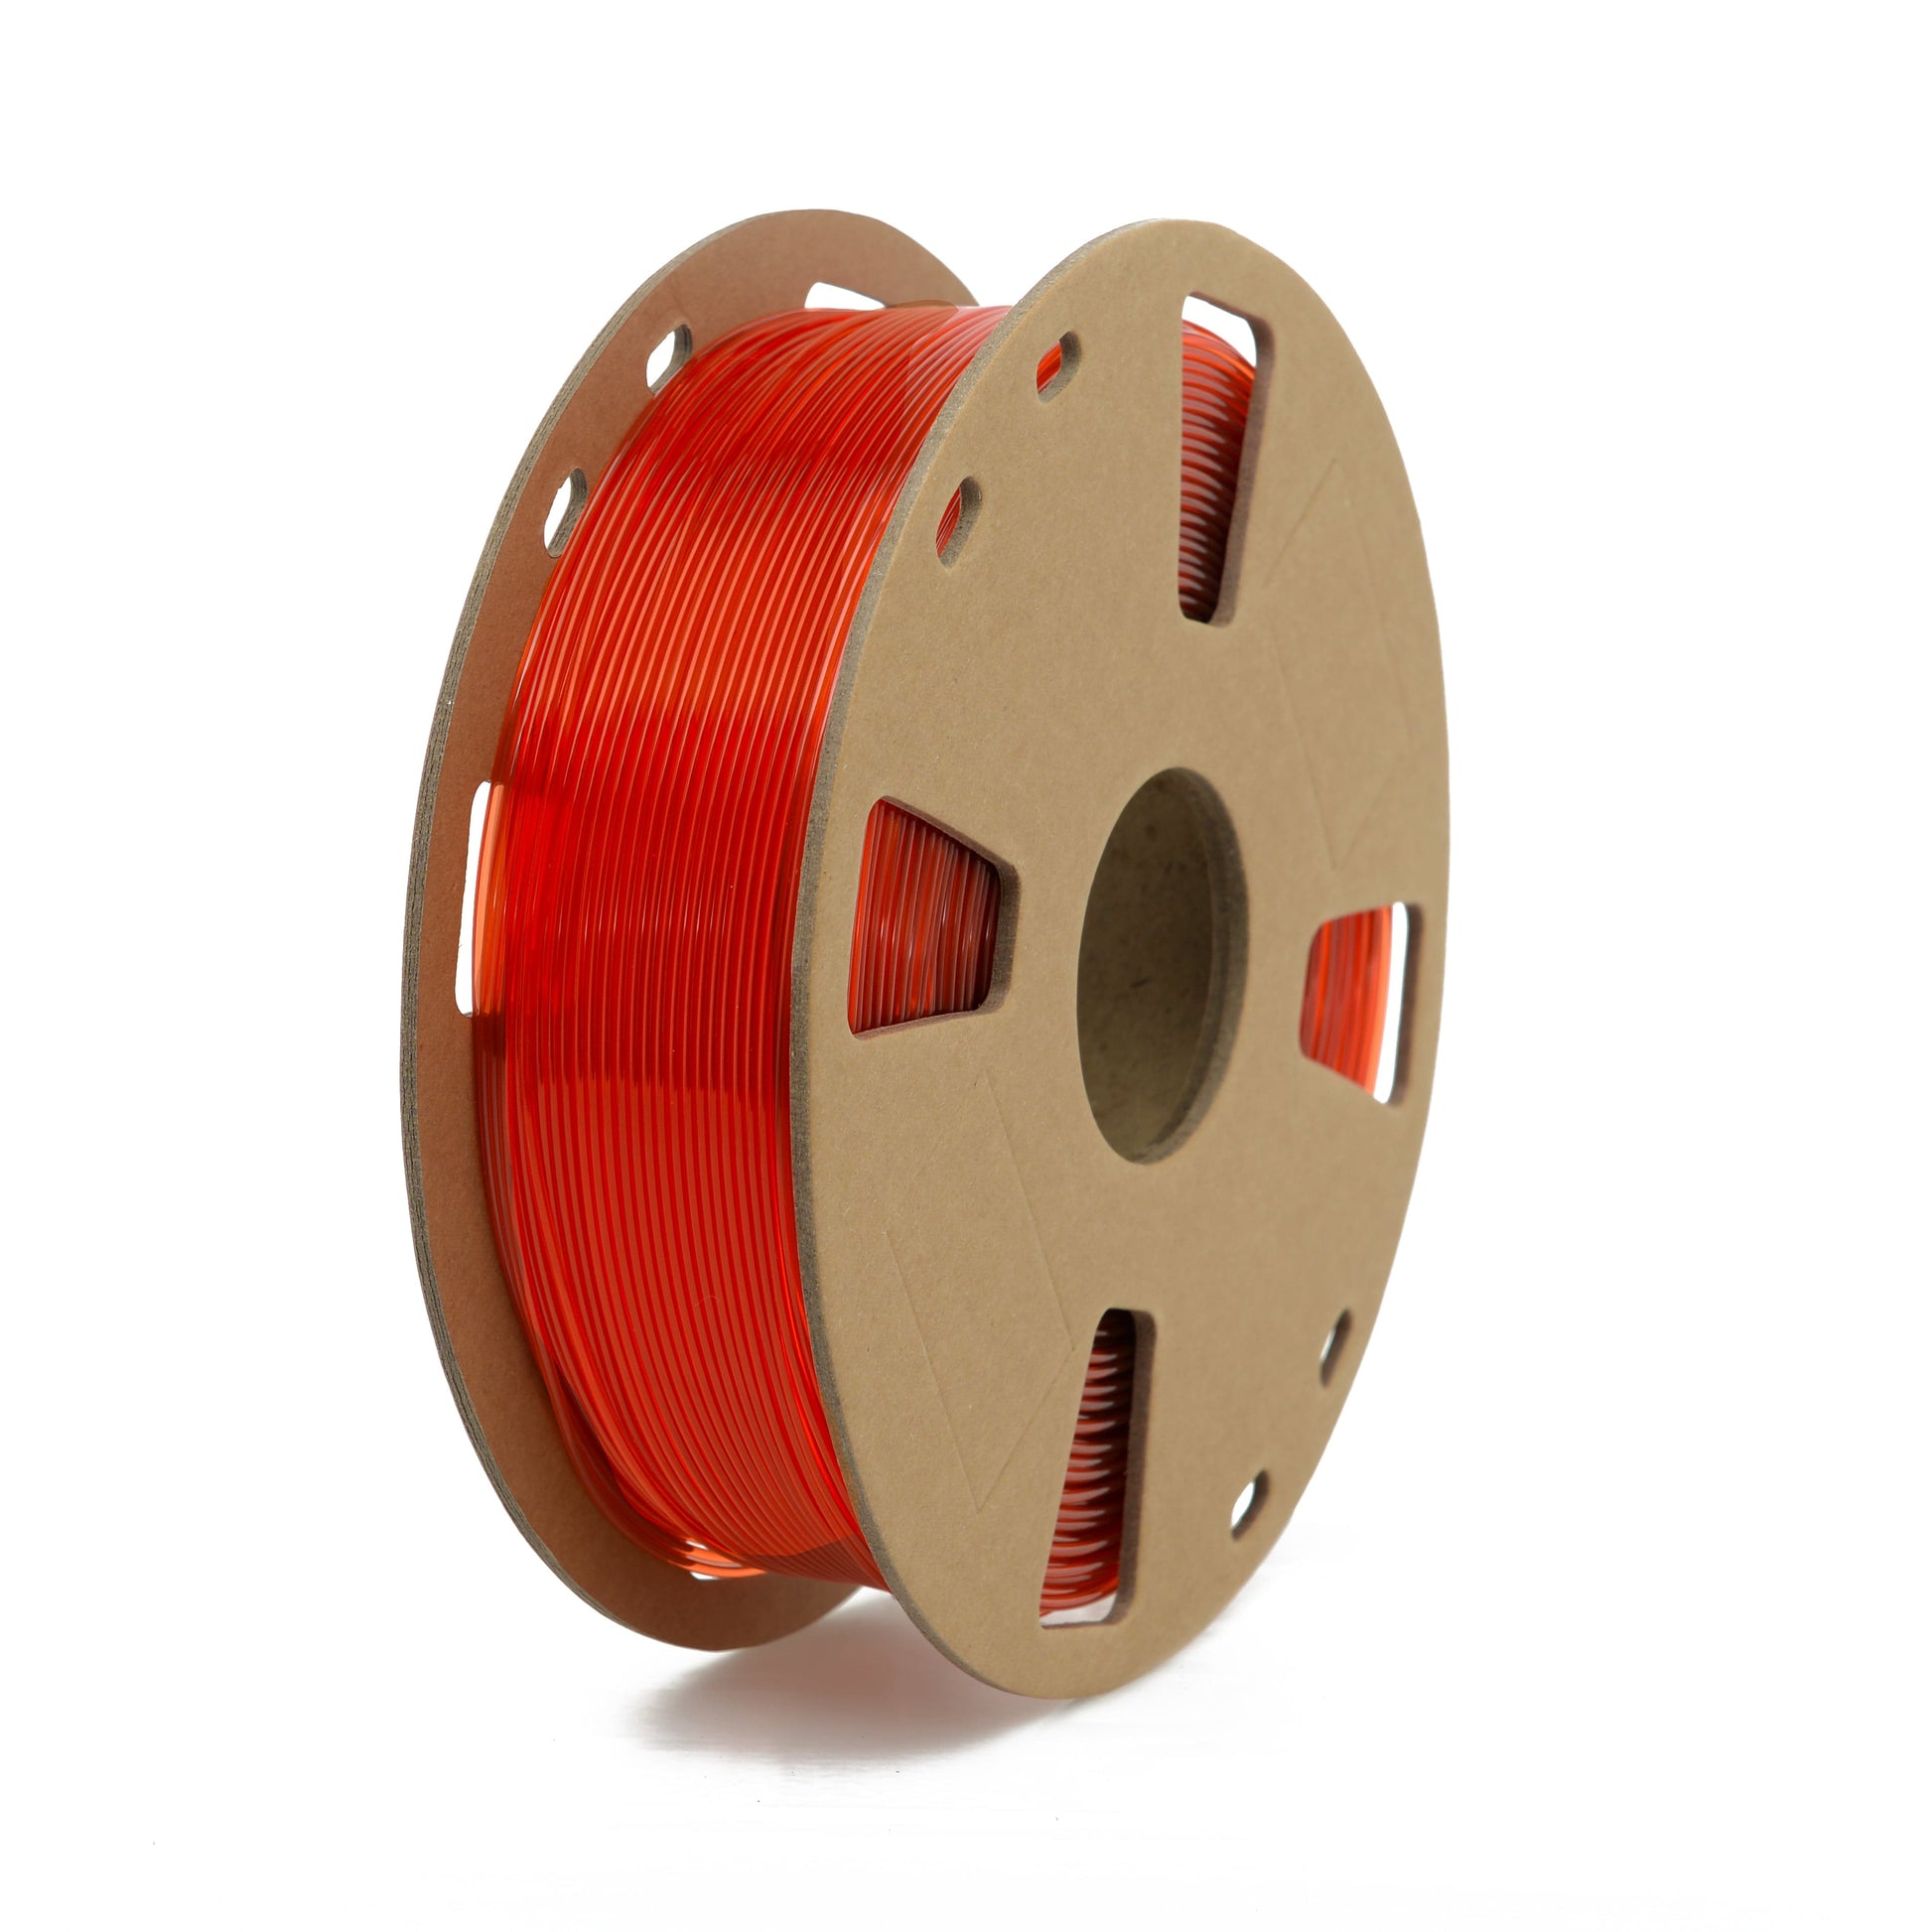 Translucent Red PETG Filament 1.75mm 1kg